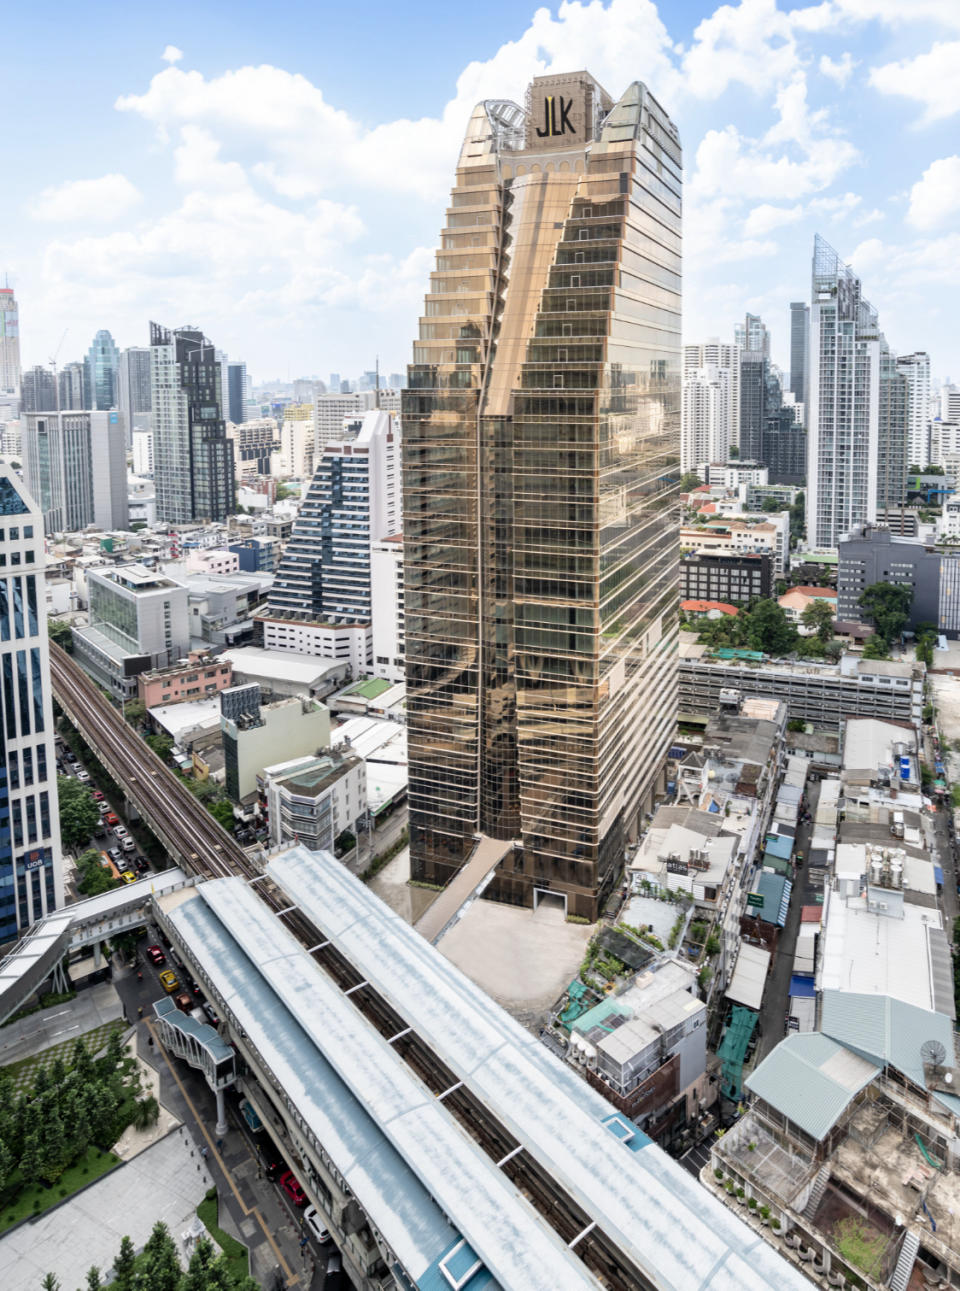 中租在泰國蓋32層摩天大樓JLK Tower開幕 總裁辜仲立：曼谷新地標。圖/中租提供